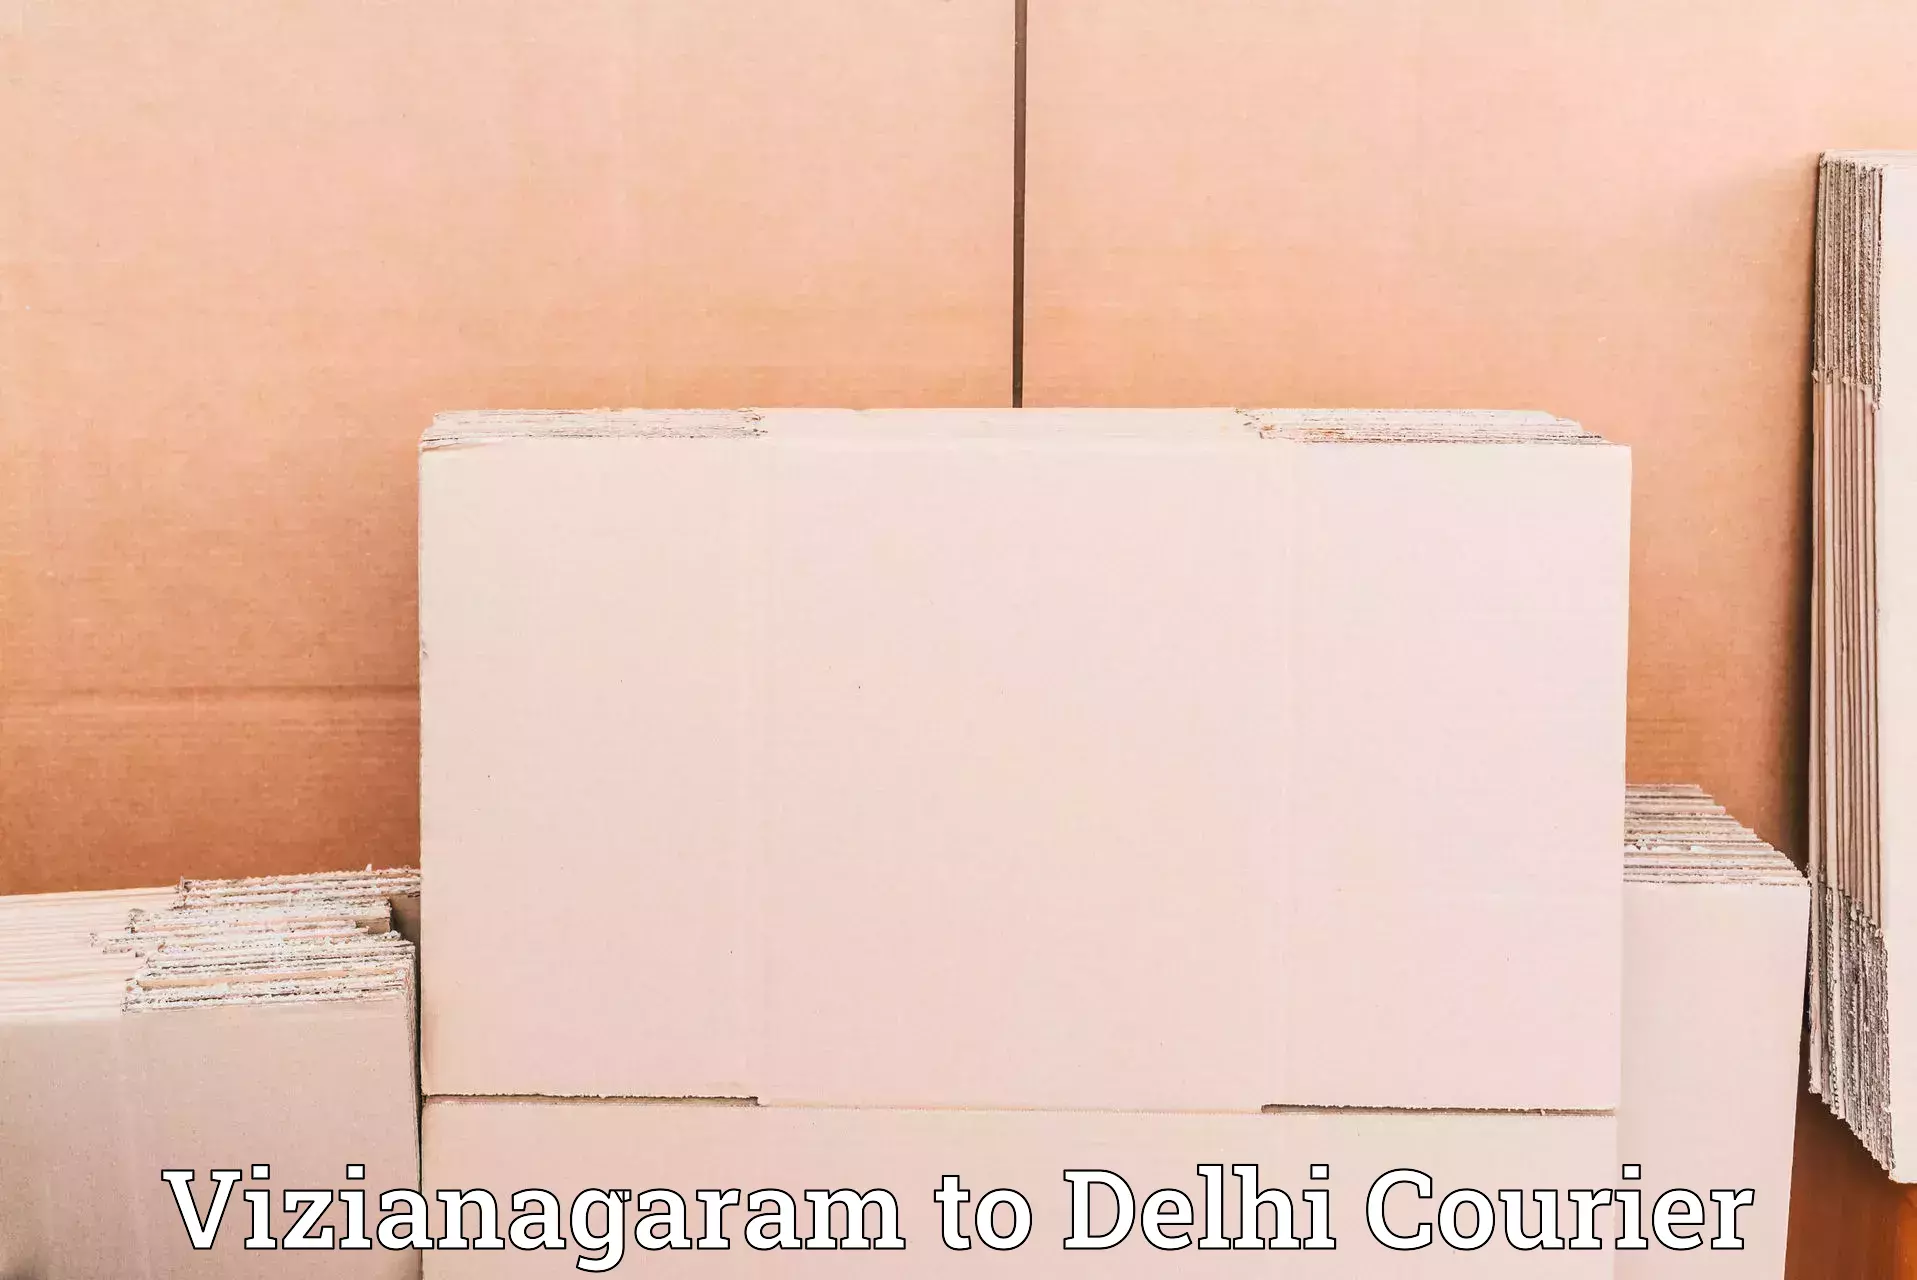 Professional courier handling in Vizianagaram to IIT Delhi